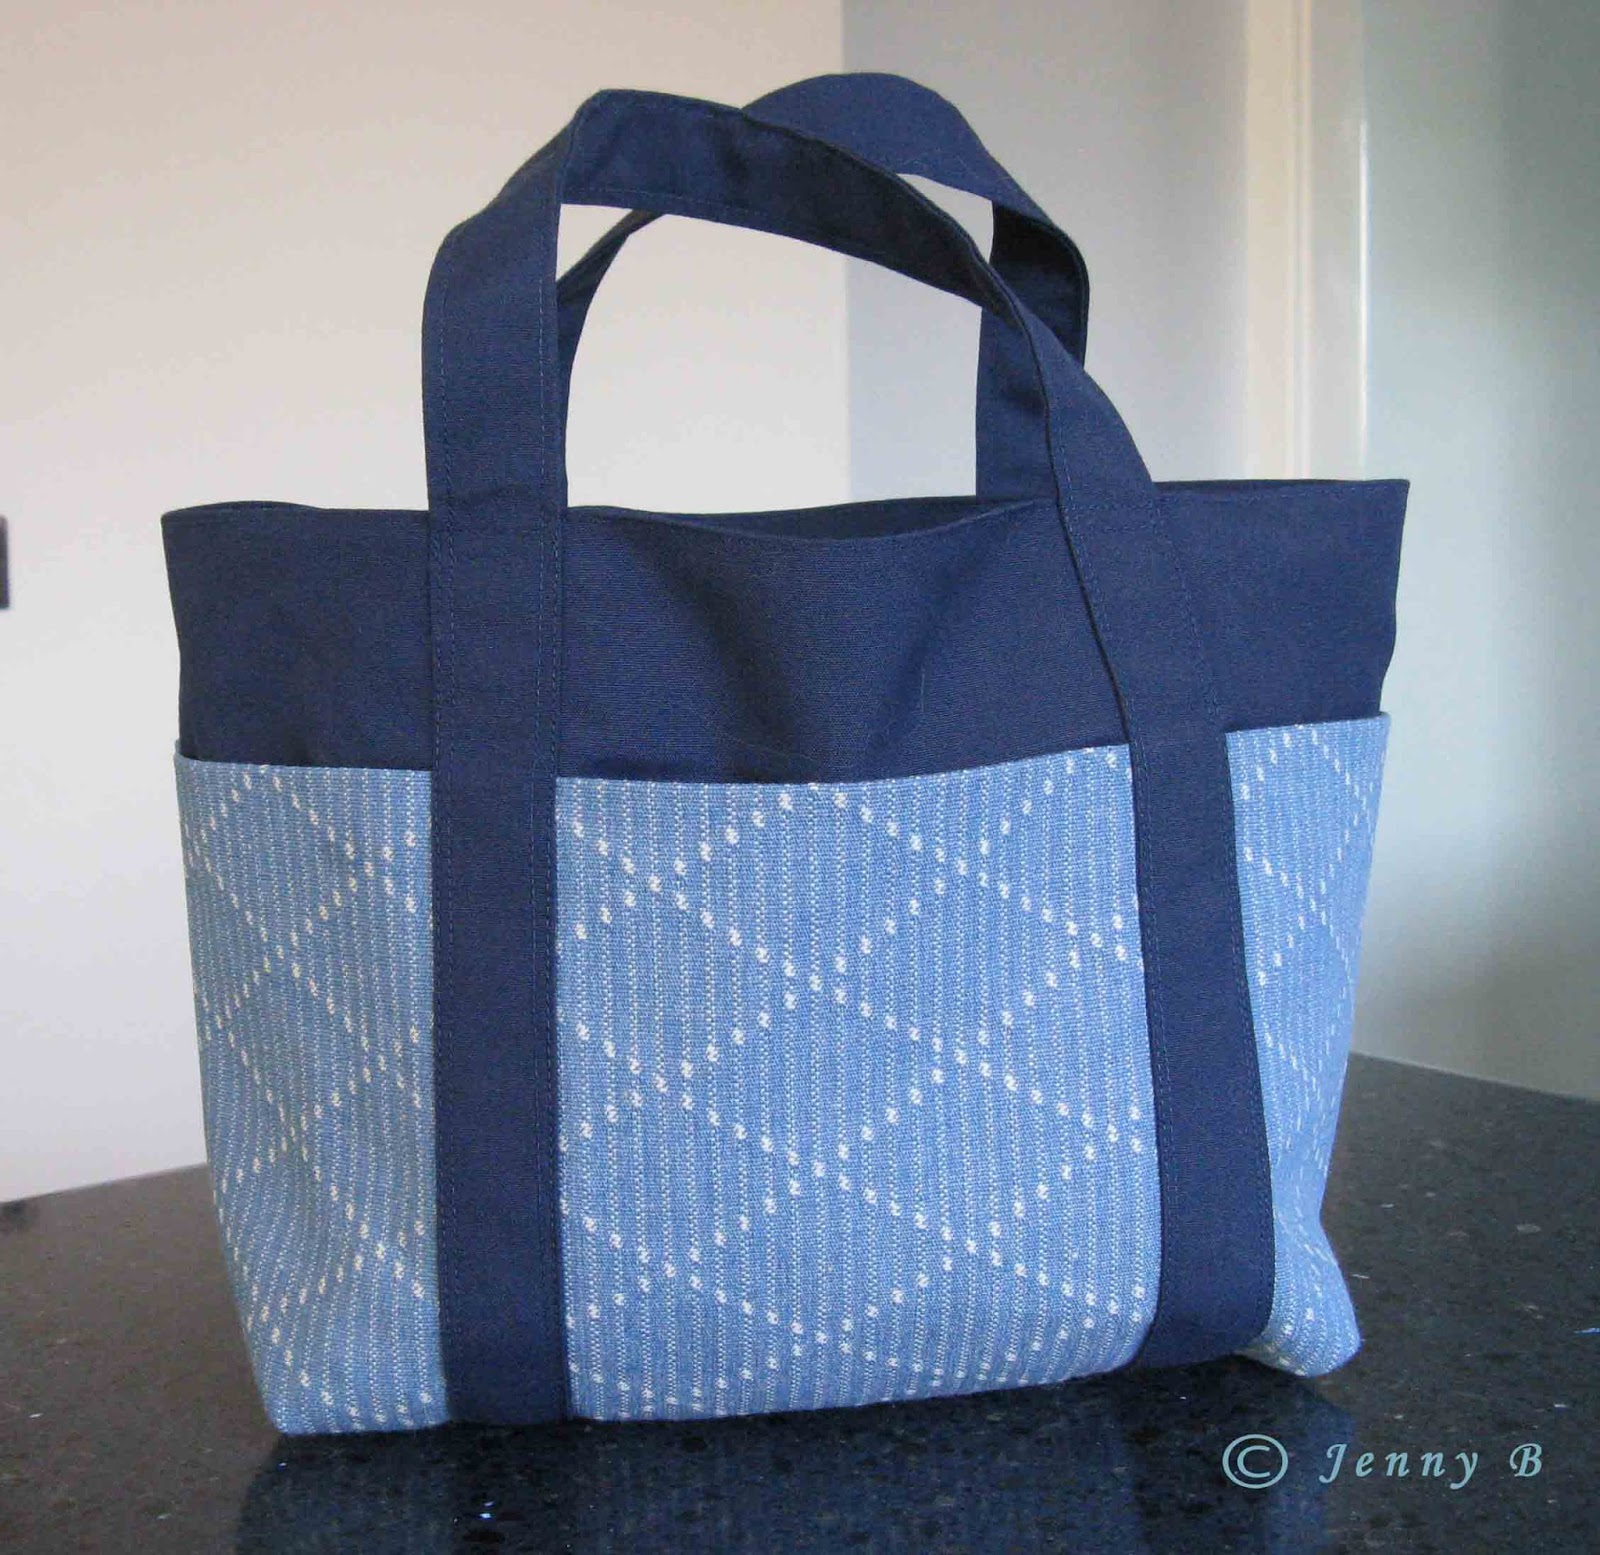 Jenny's Australian Needleart Journey: A Little Blue Lunch Bag